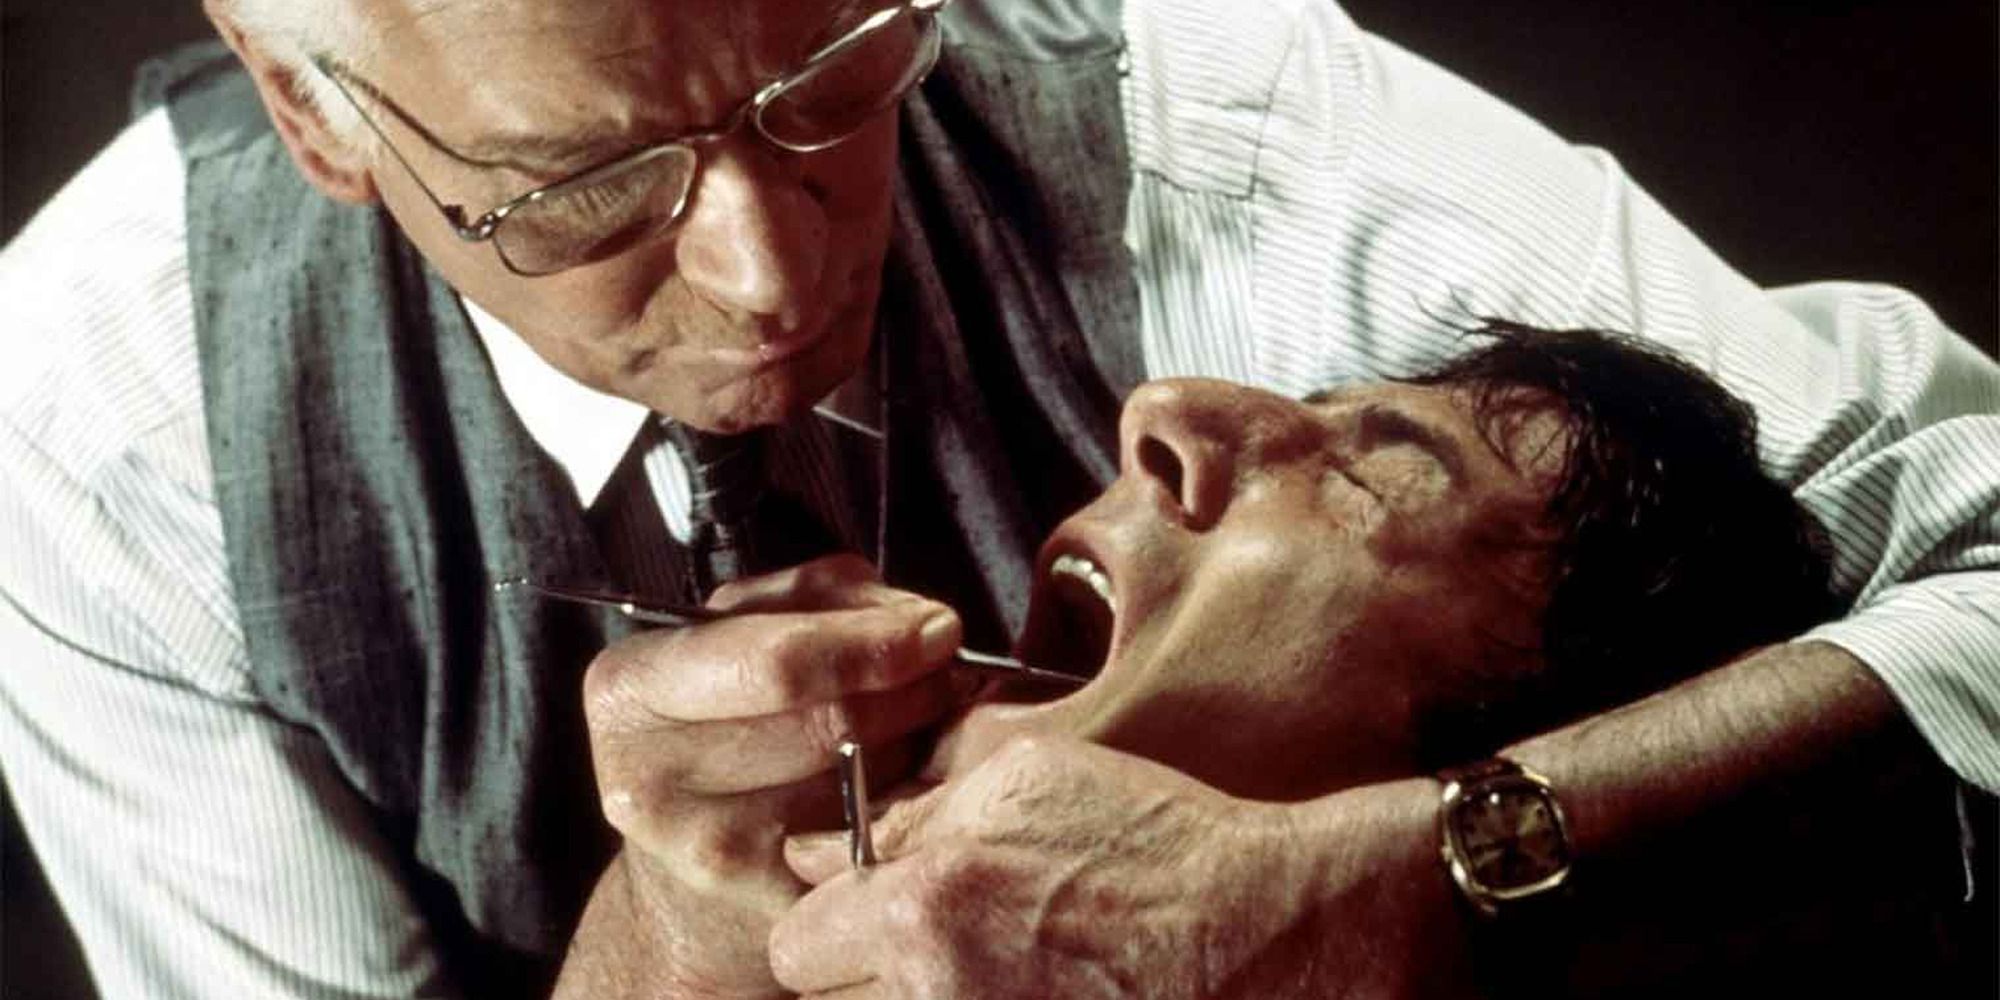 El Dr. Christian Szell examina uno de los dientes de Babe Levy con una herramienta de metal.